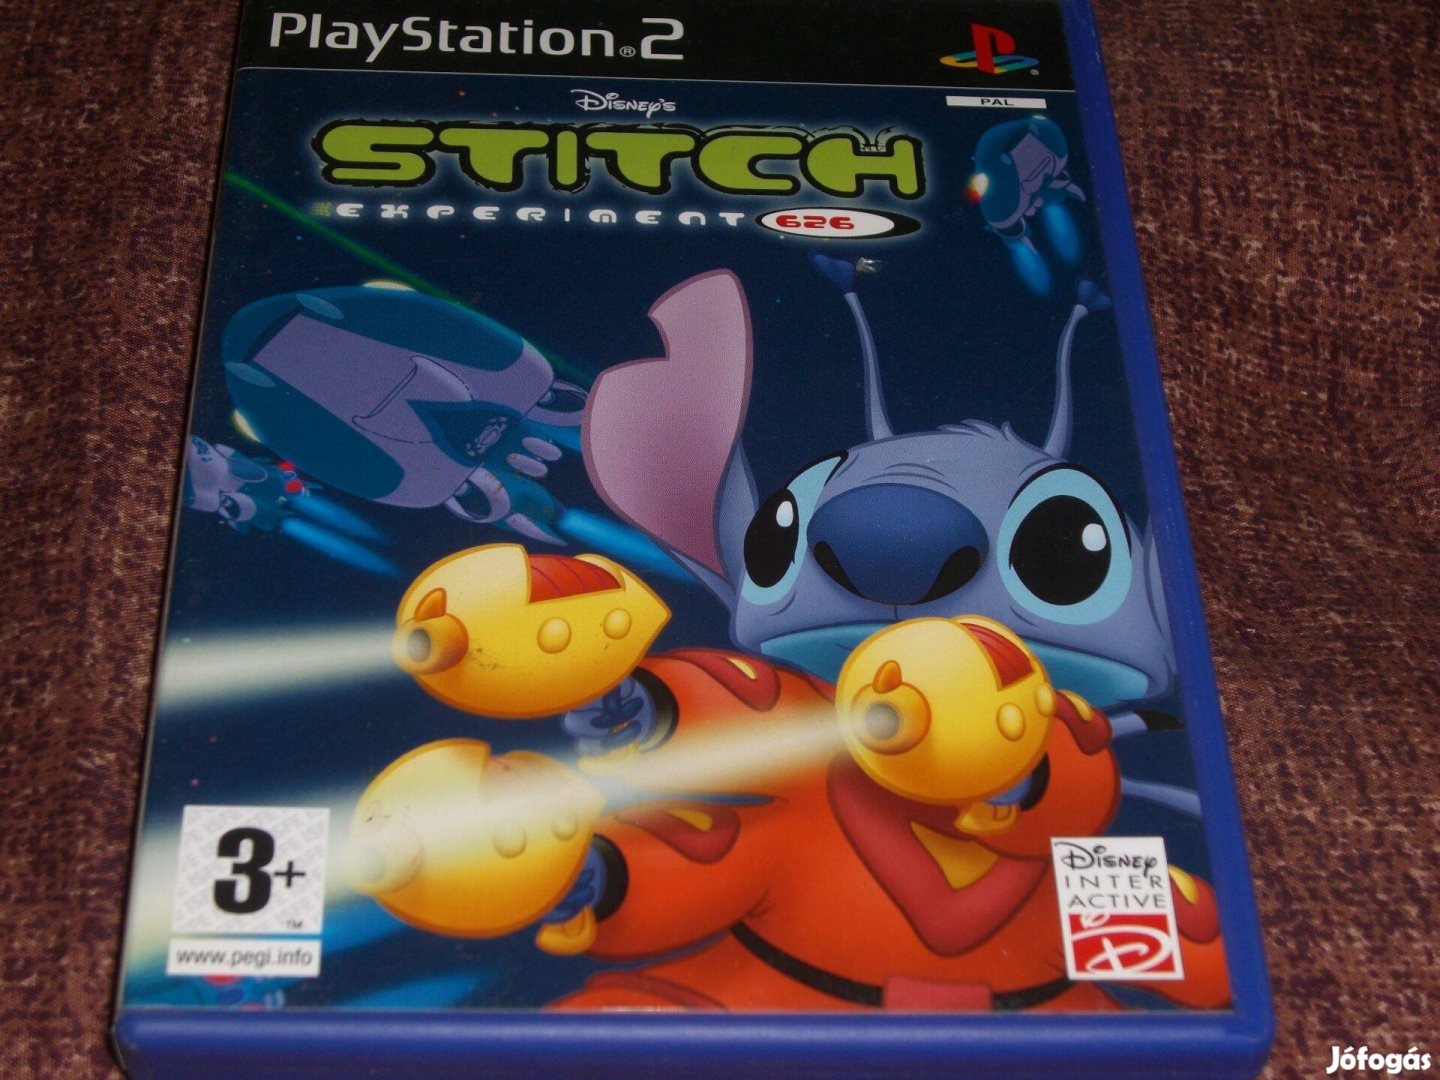 Disney Stitch Experiment 626 Playstation 2 eredeti lemez ( 4000 Ft )